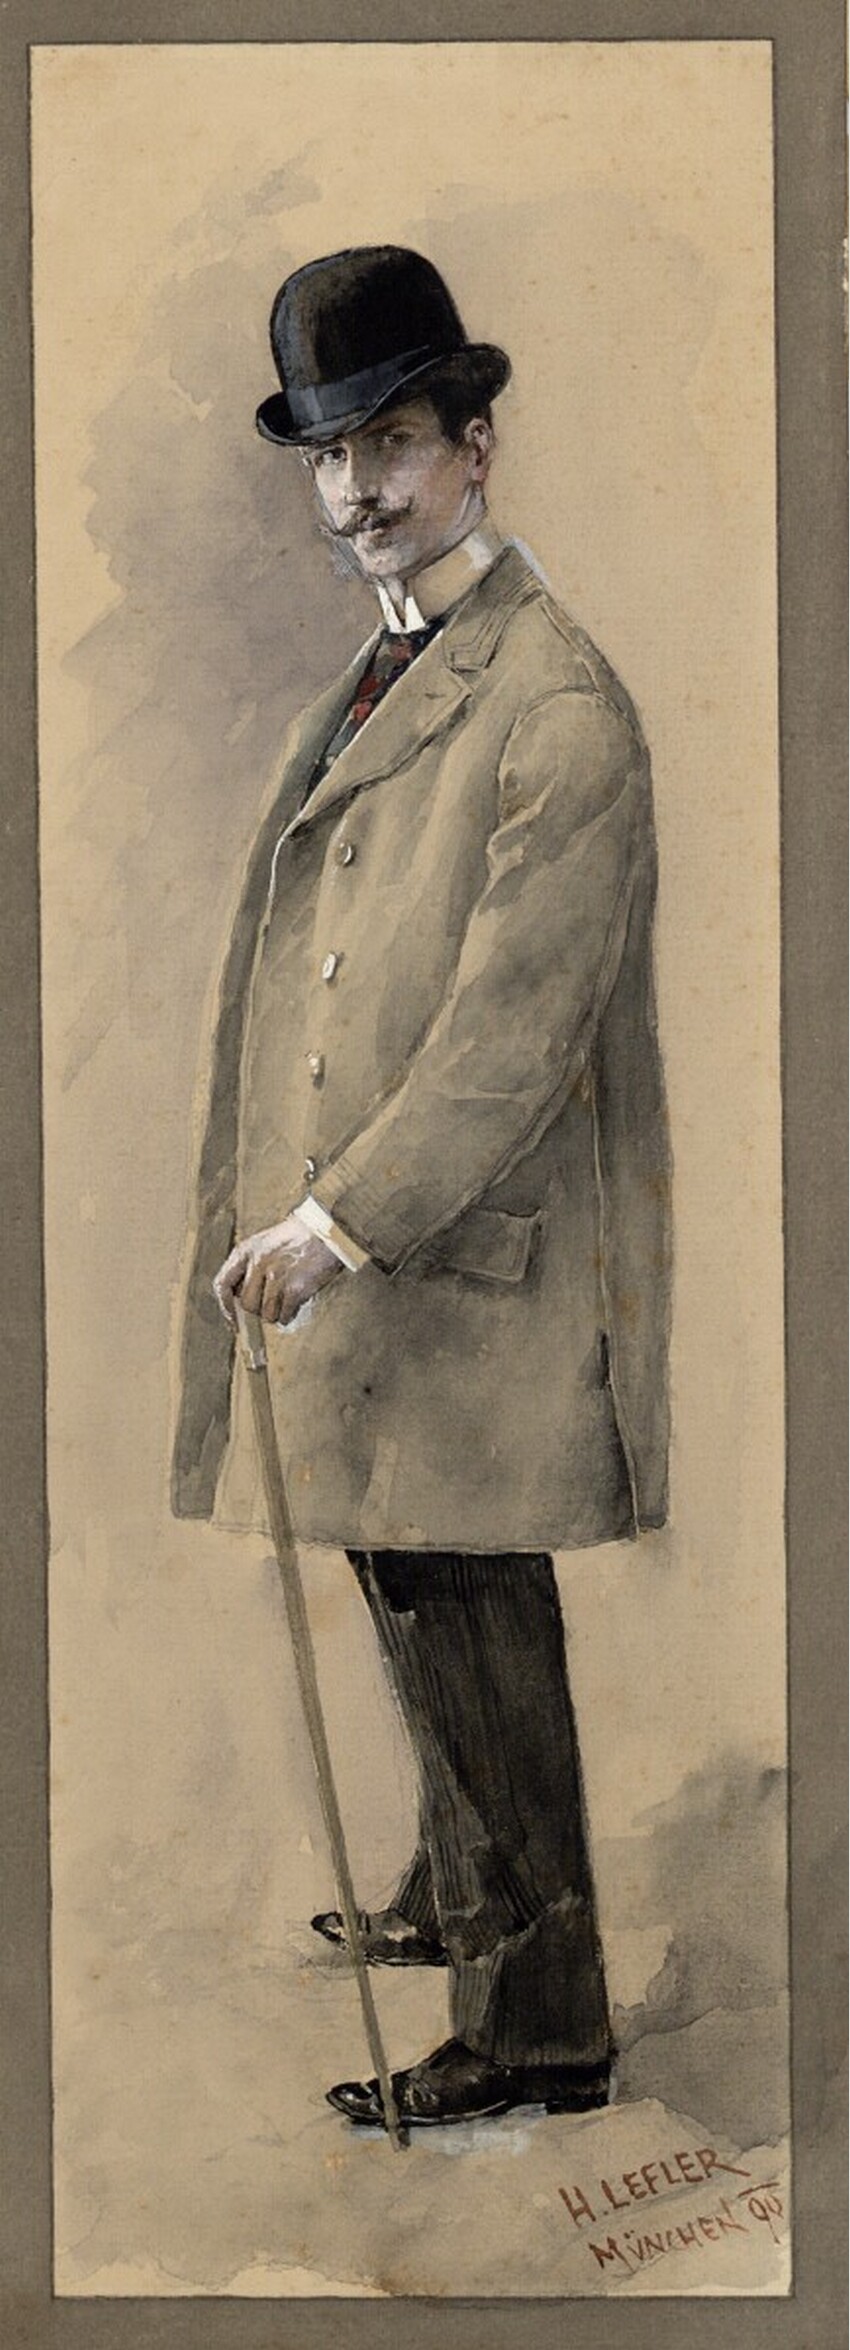 Heinrich Lefler (Wien 1863 - 1919 Wien) | Herr im Gehrock | Displayed motifs: Coat, Footwear, Man, Hat, Human face, Latin cross, 